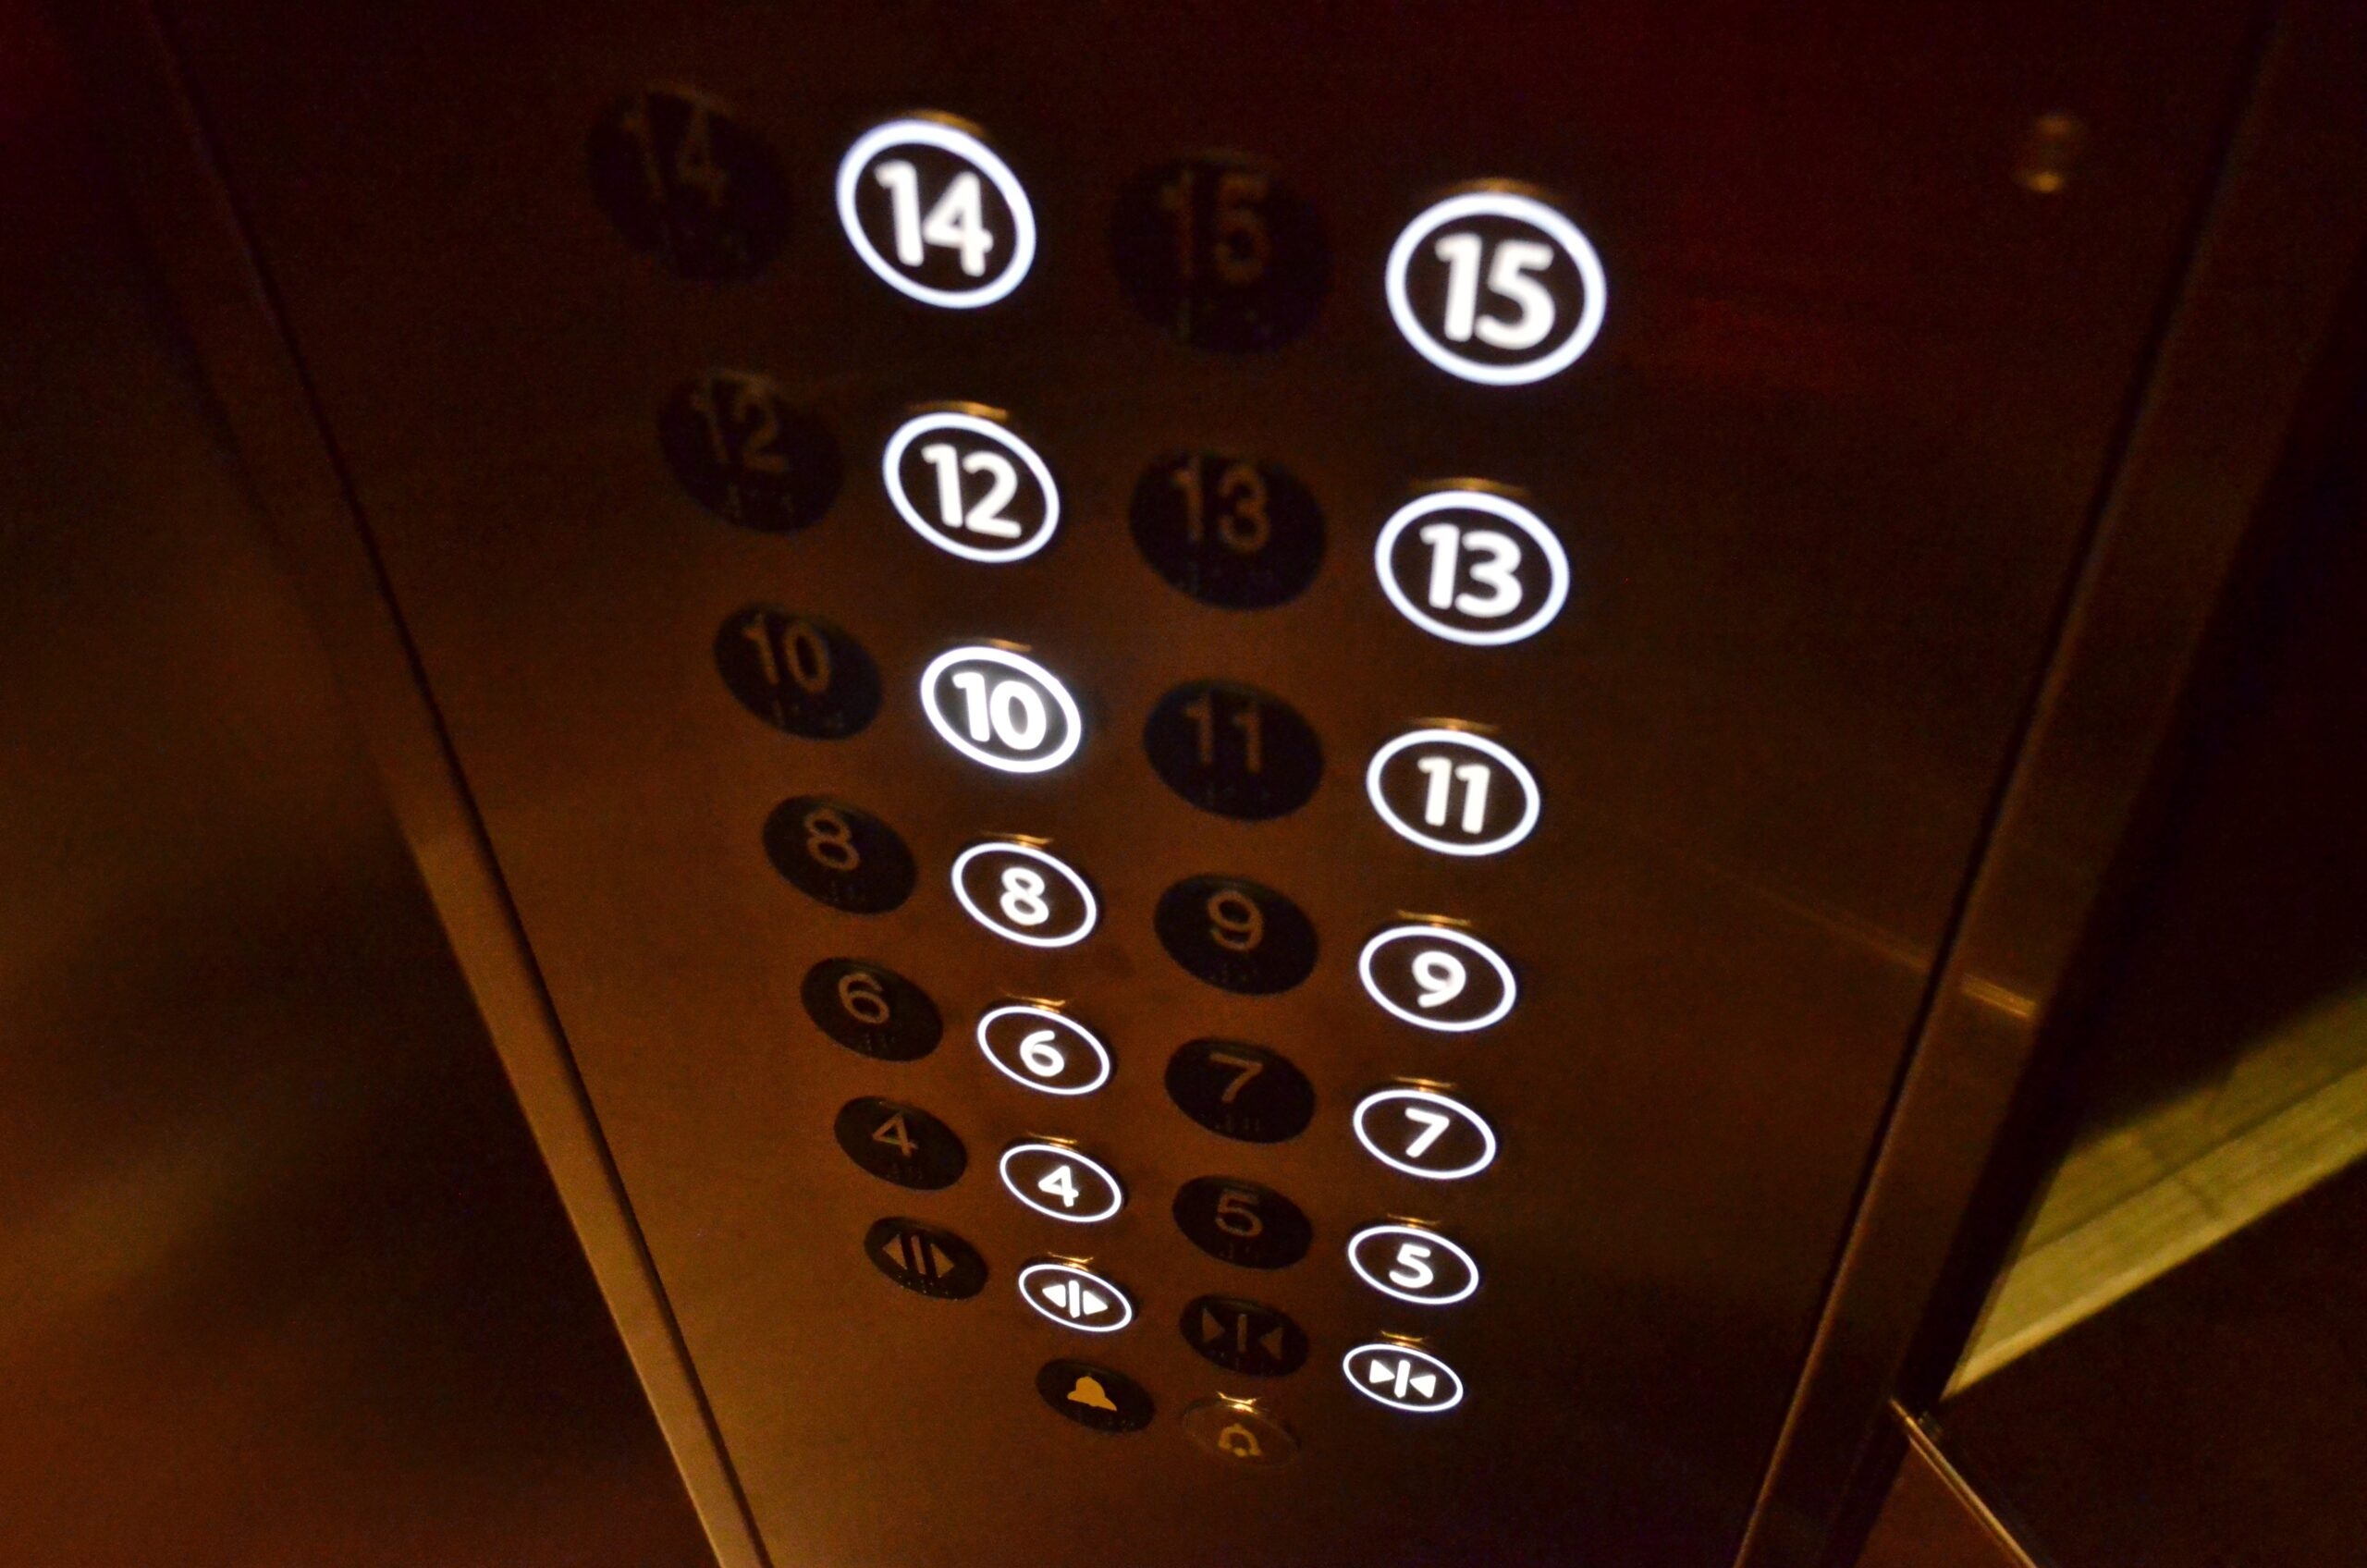 ФКР обновил 10 лифтов за три месяца. Должен был – не менее 200